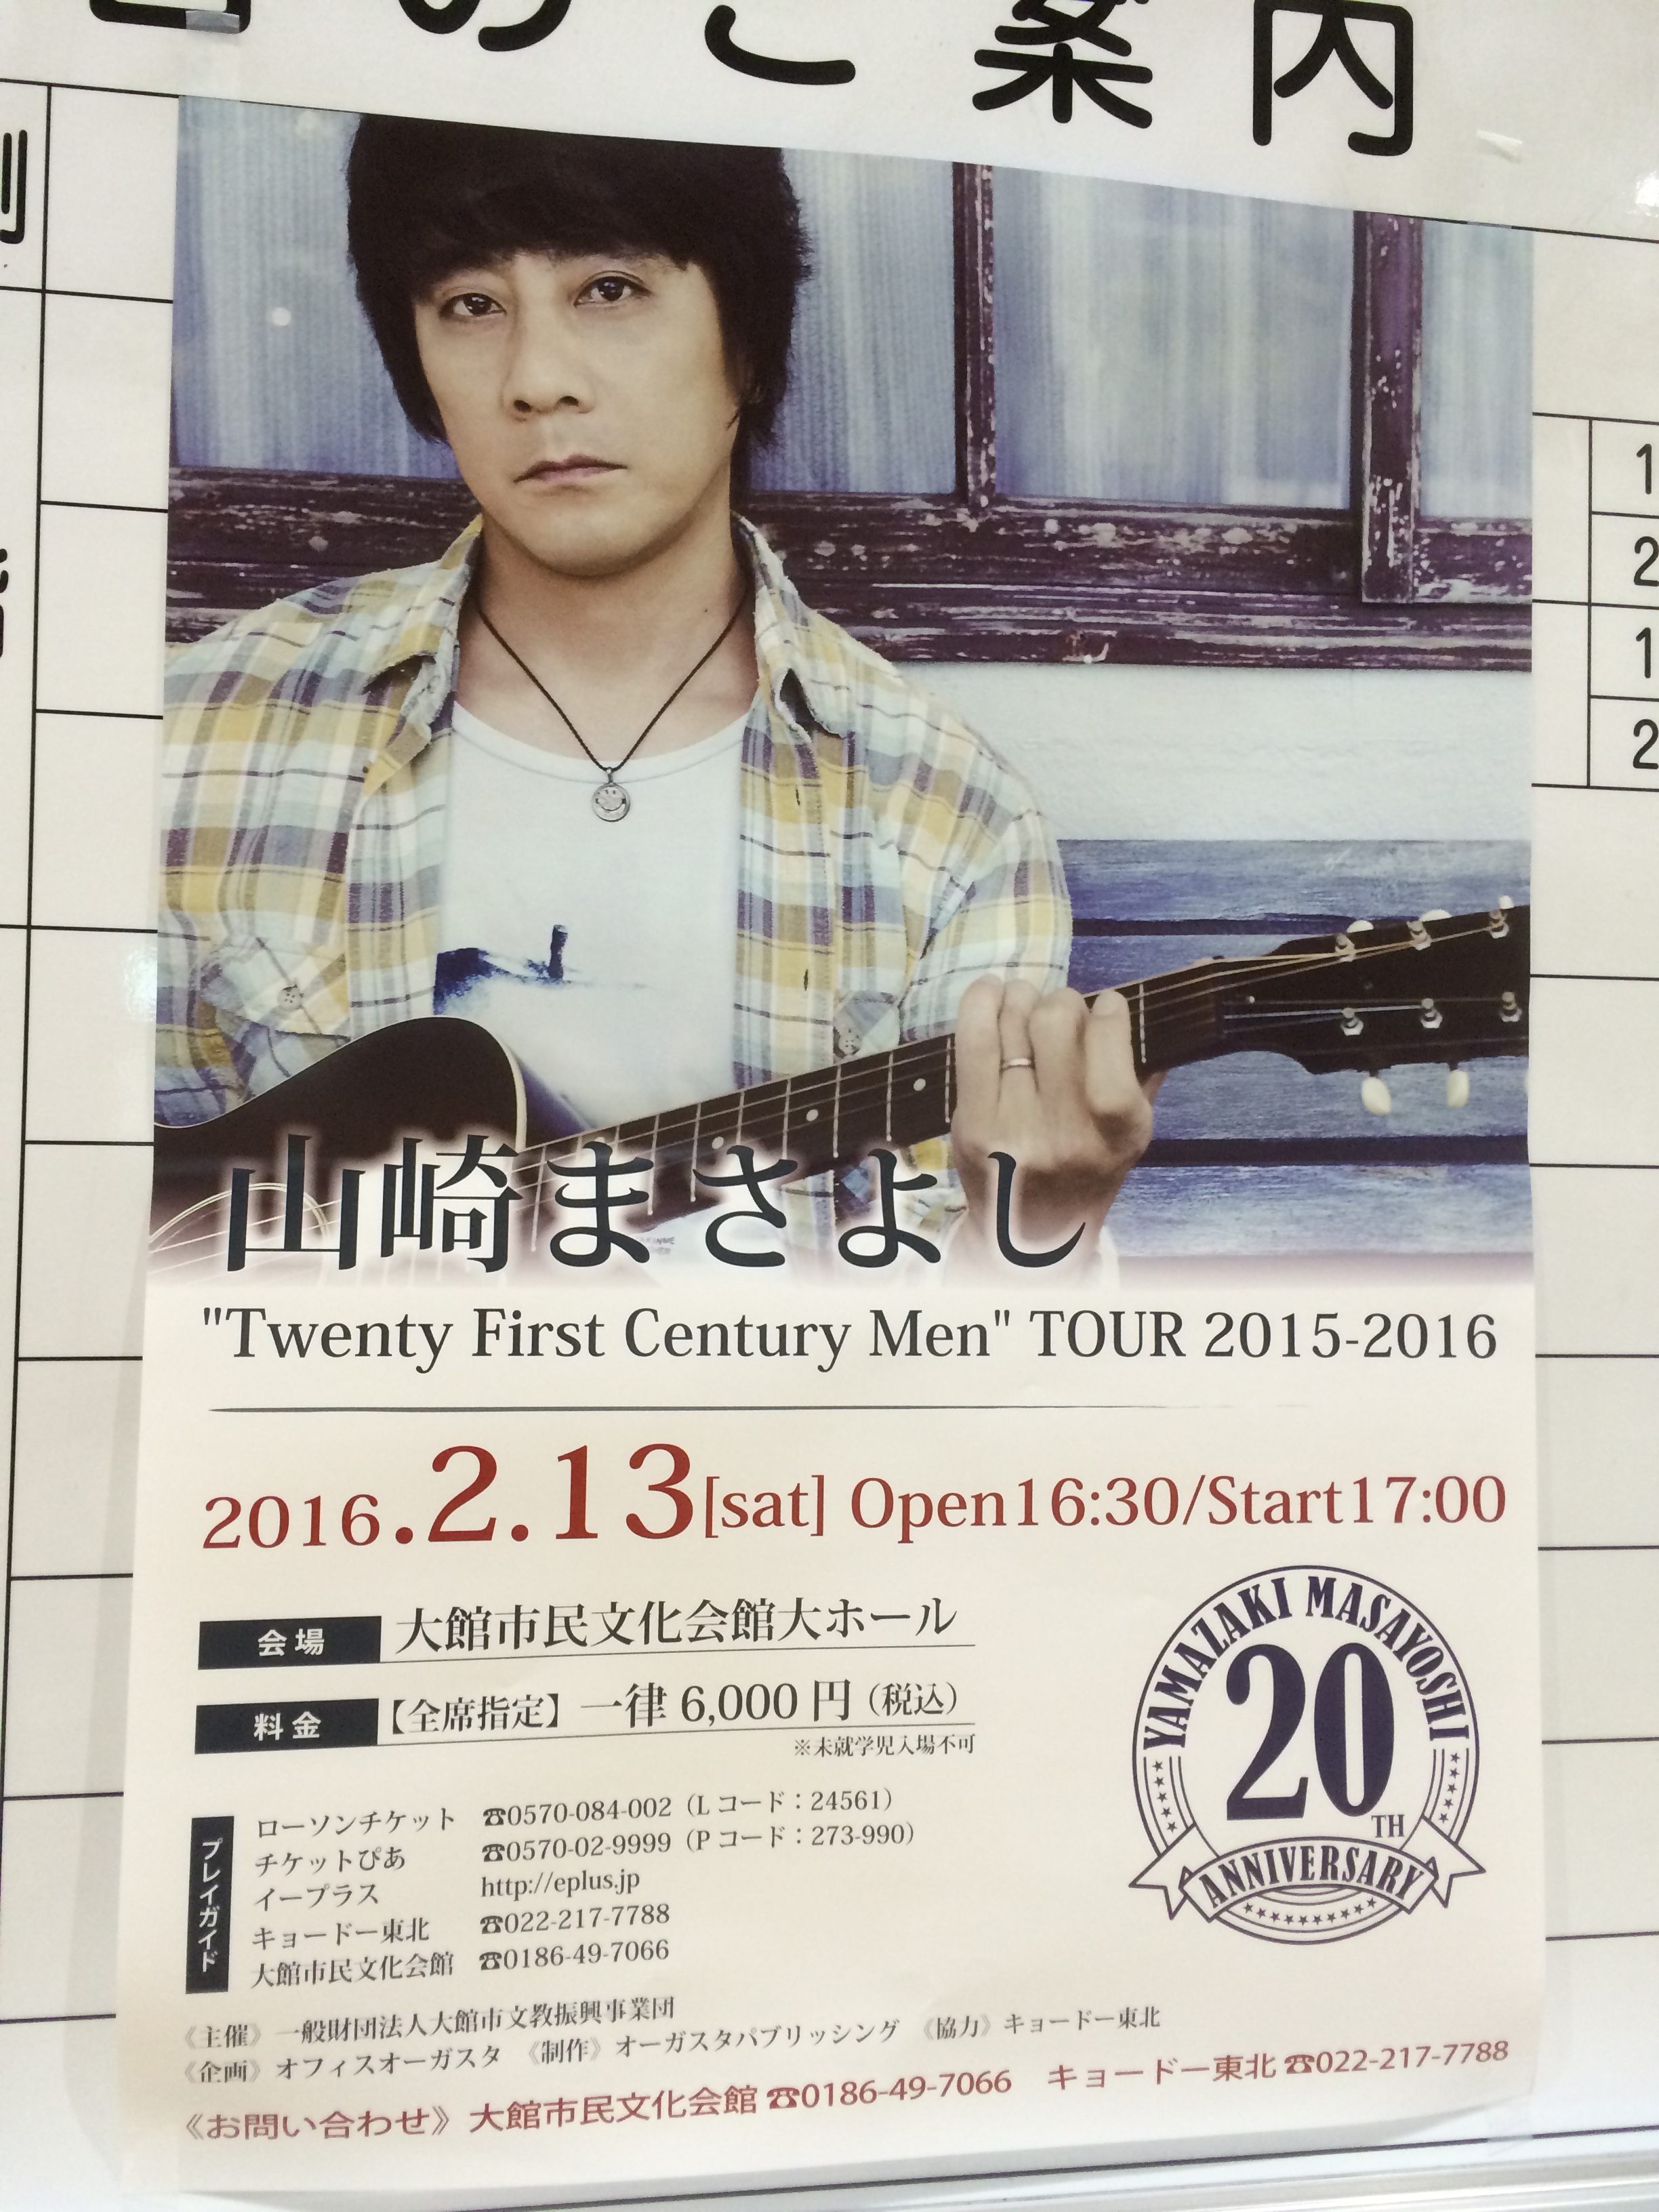 山崎まさよし ”Twenty first century men ツアー 2015-2016″ 大館公演ライブレポート。